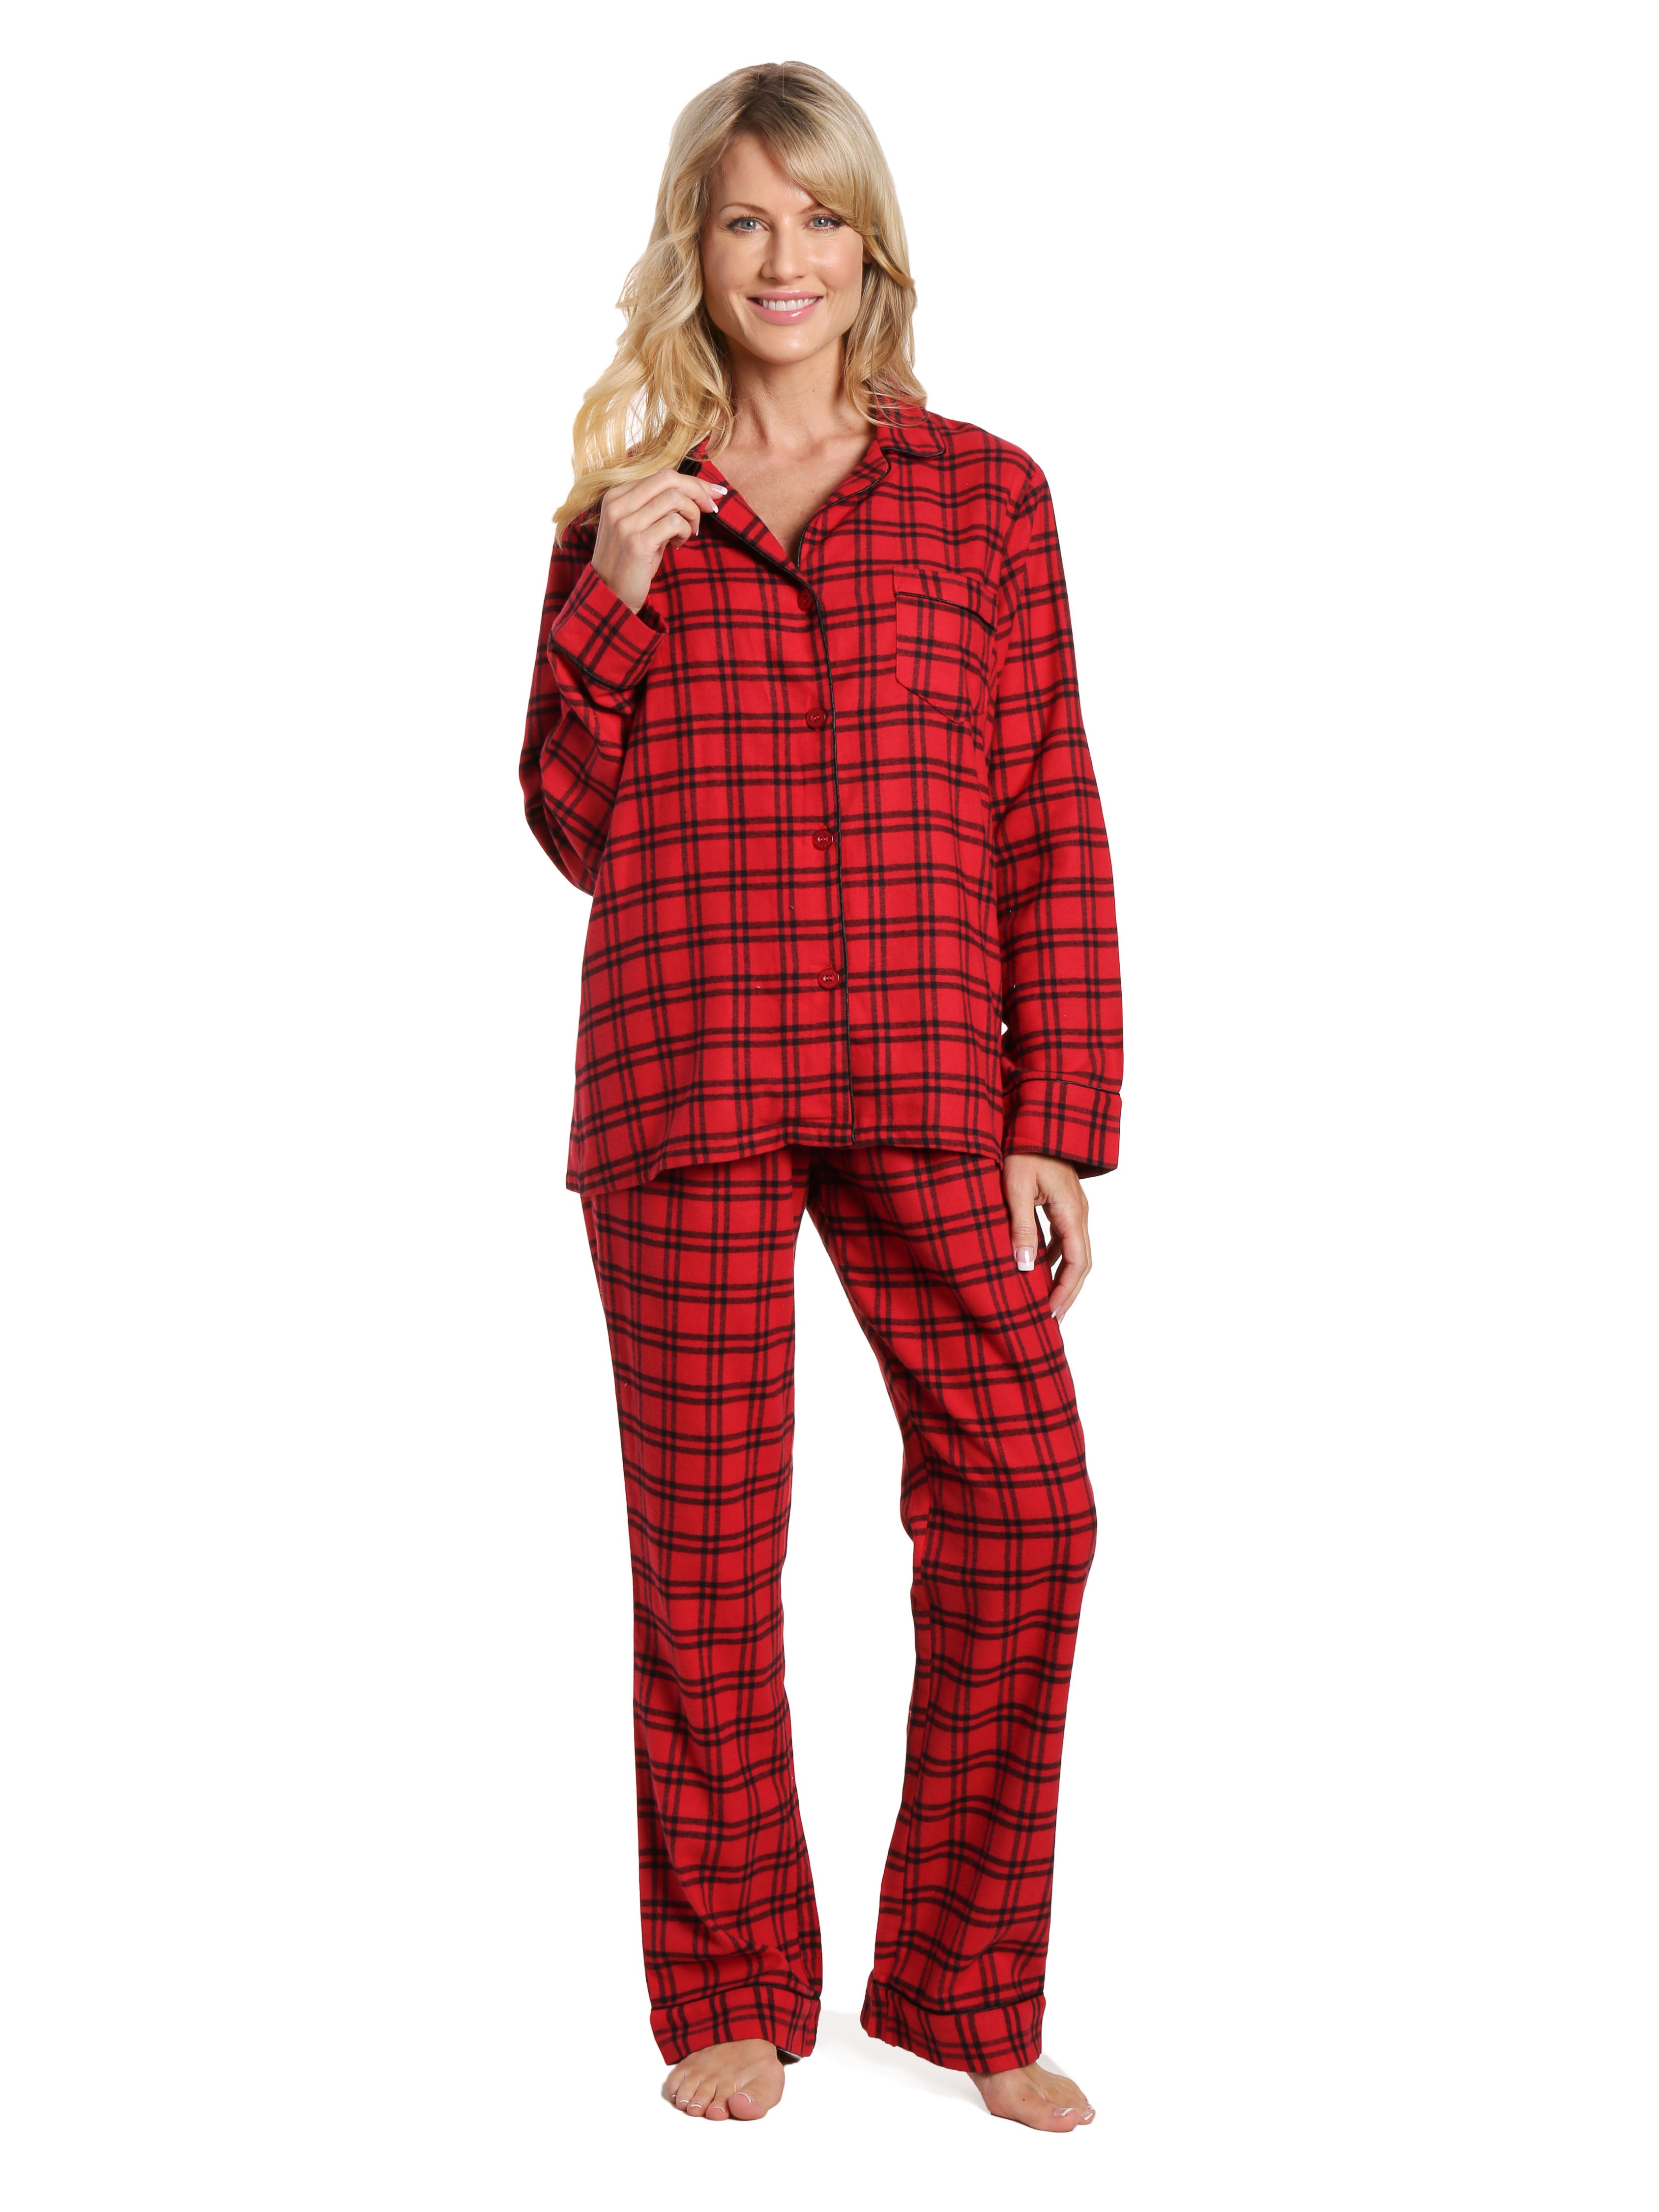 Womens 100% Cotton Lightweight Flannel Pajama Sleepwear Set - Checks R ...